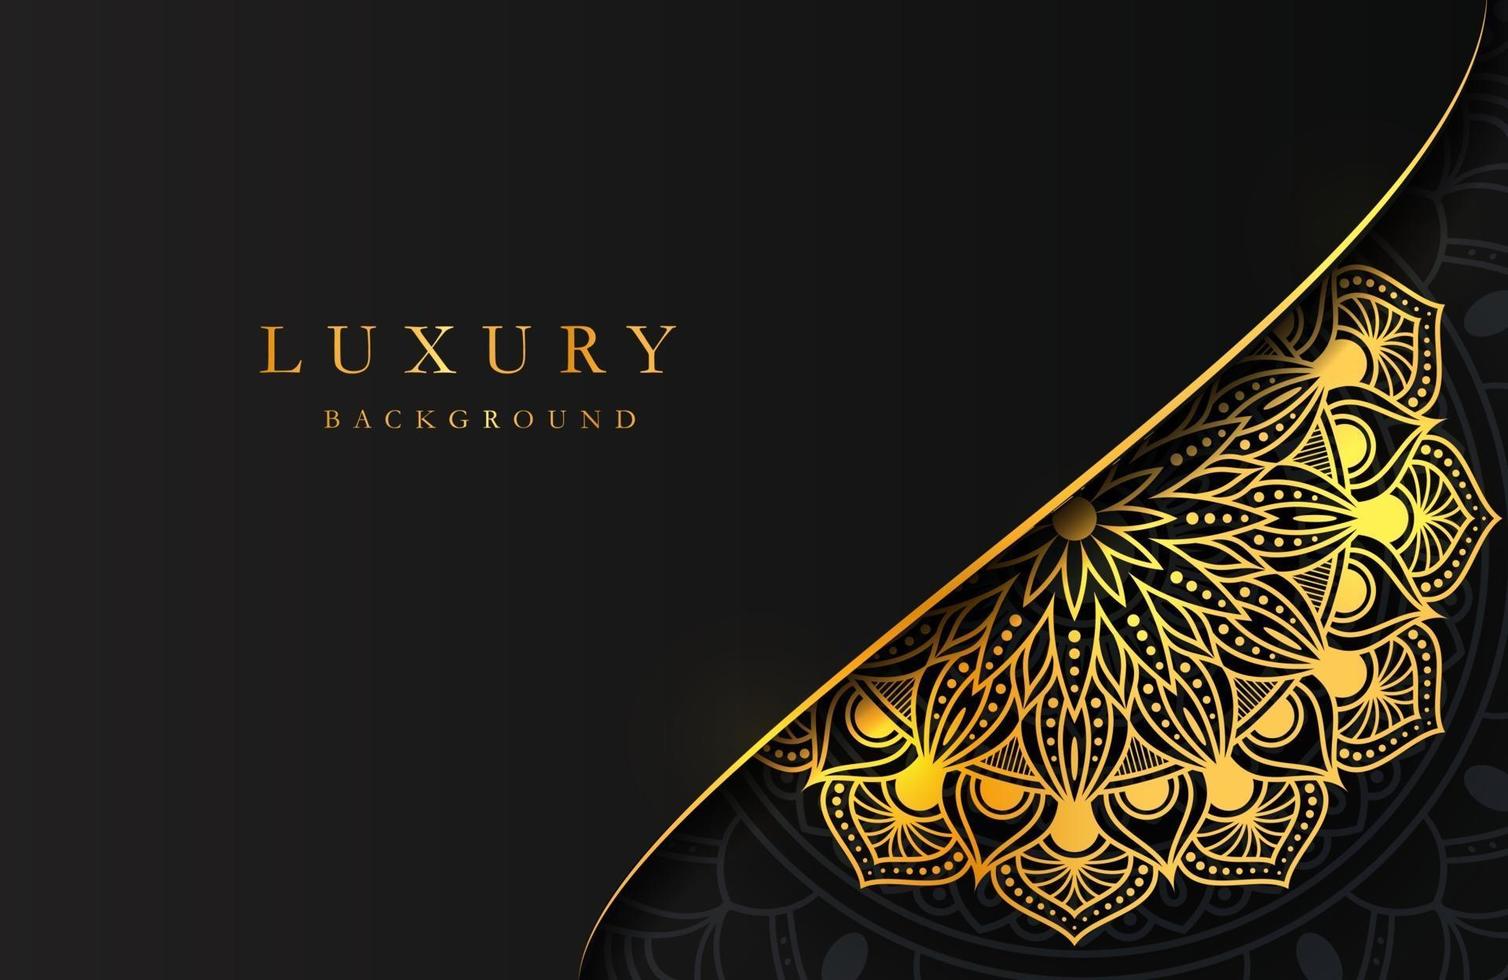 Fondo de lujo con adornos arabescos islámicos dorados relucientes en superficie oscura vector